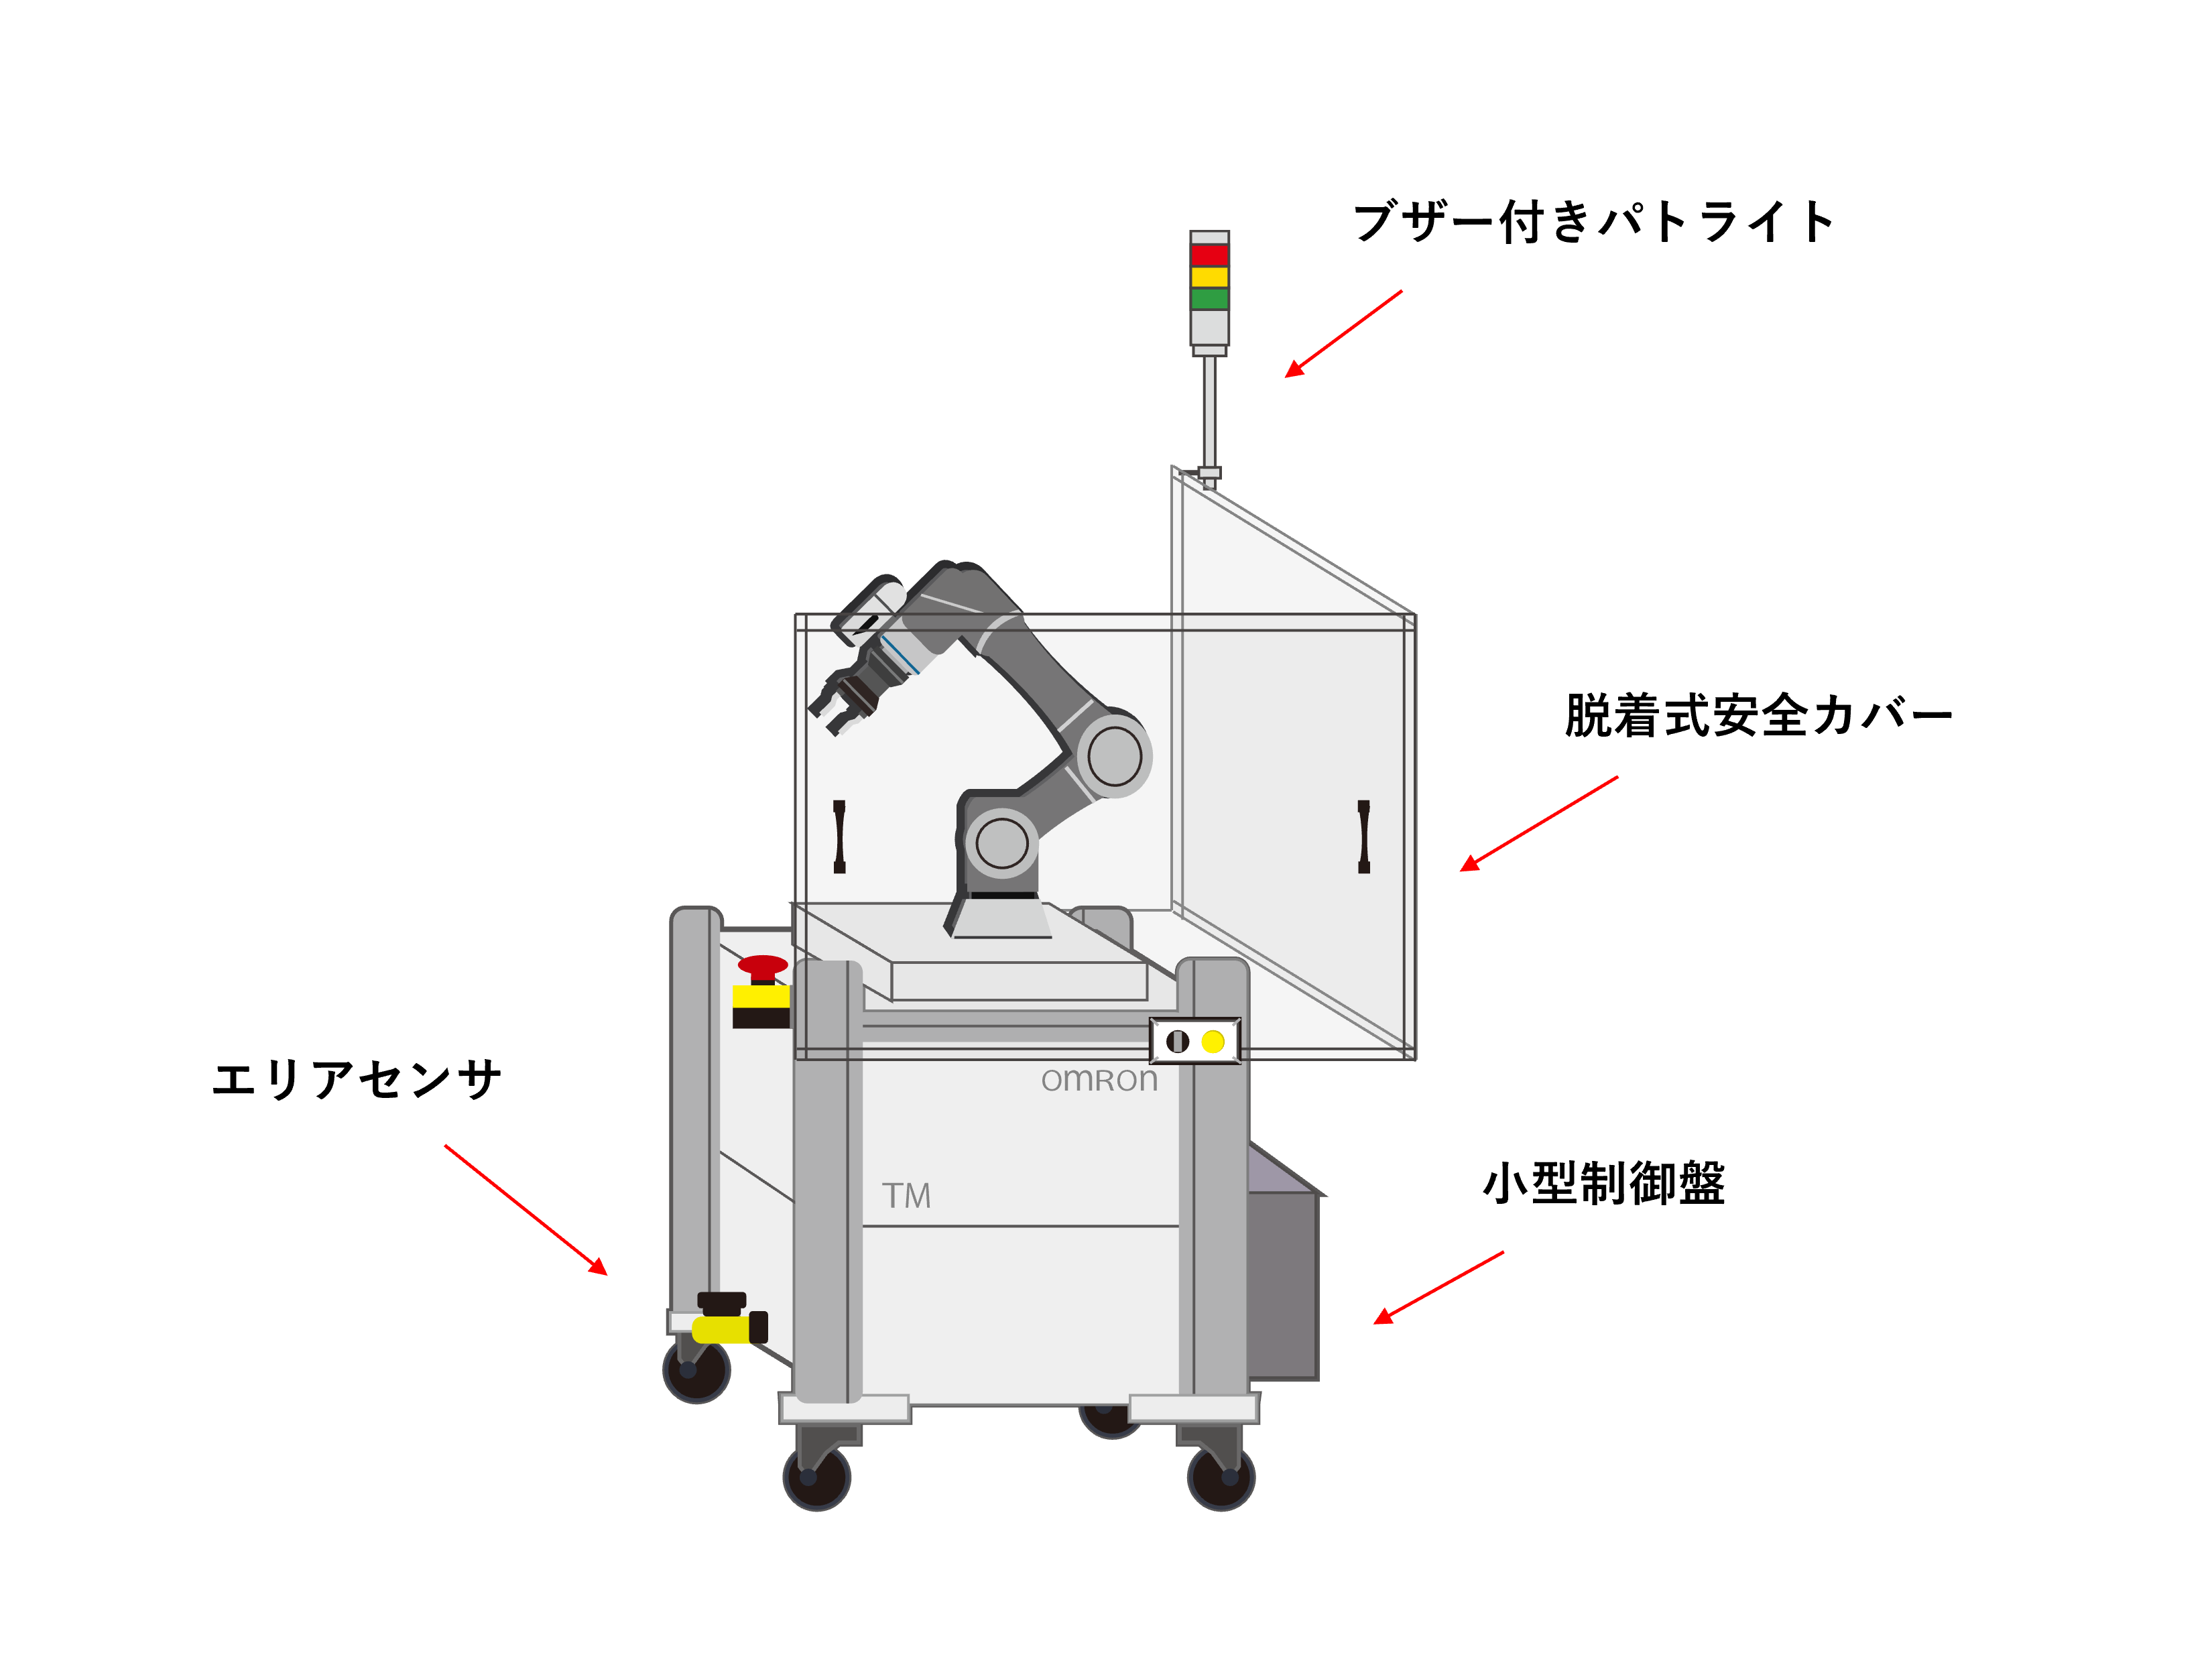 パッケージ型移動式協調ロボット